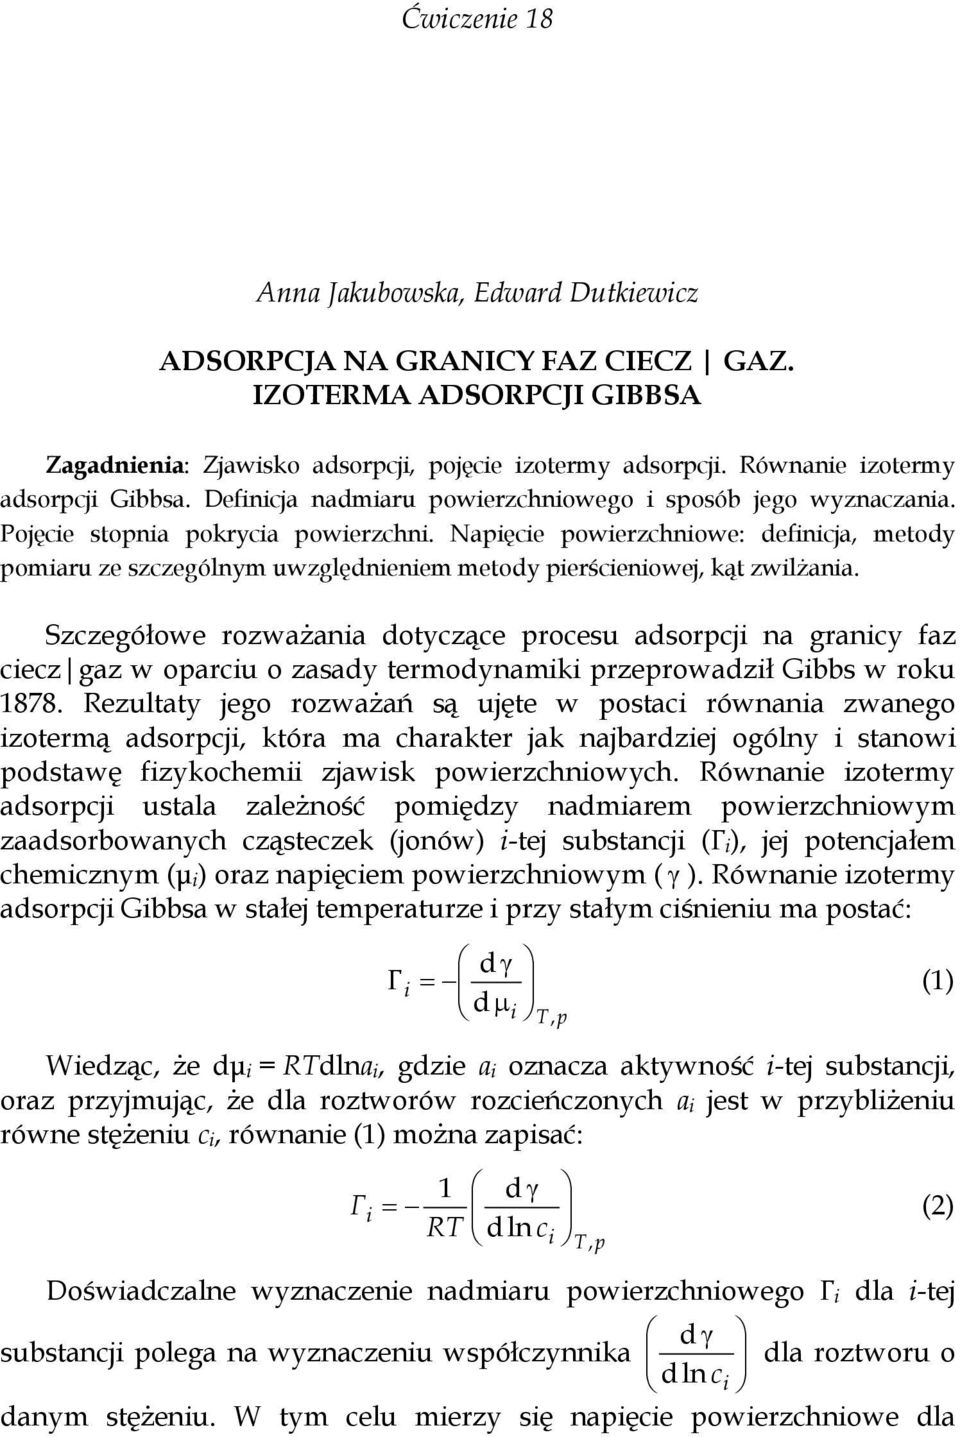 Szczegółowe rozważana dotyczące procesu adsorpcj na grancy faz cecz gaz w oparcu o zasady termodynamk przeprowadzł Gbbs w roku 1878.